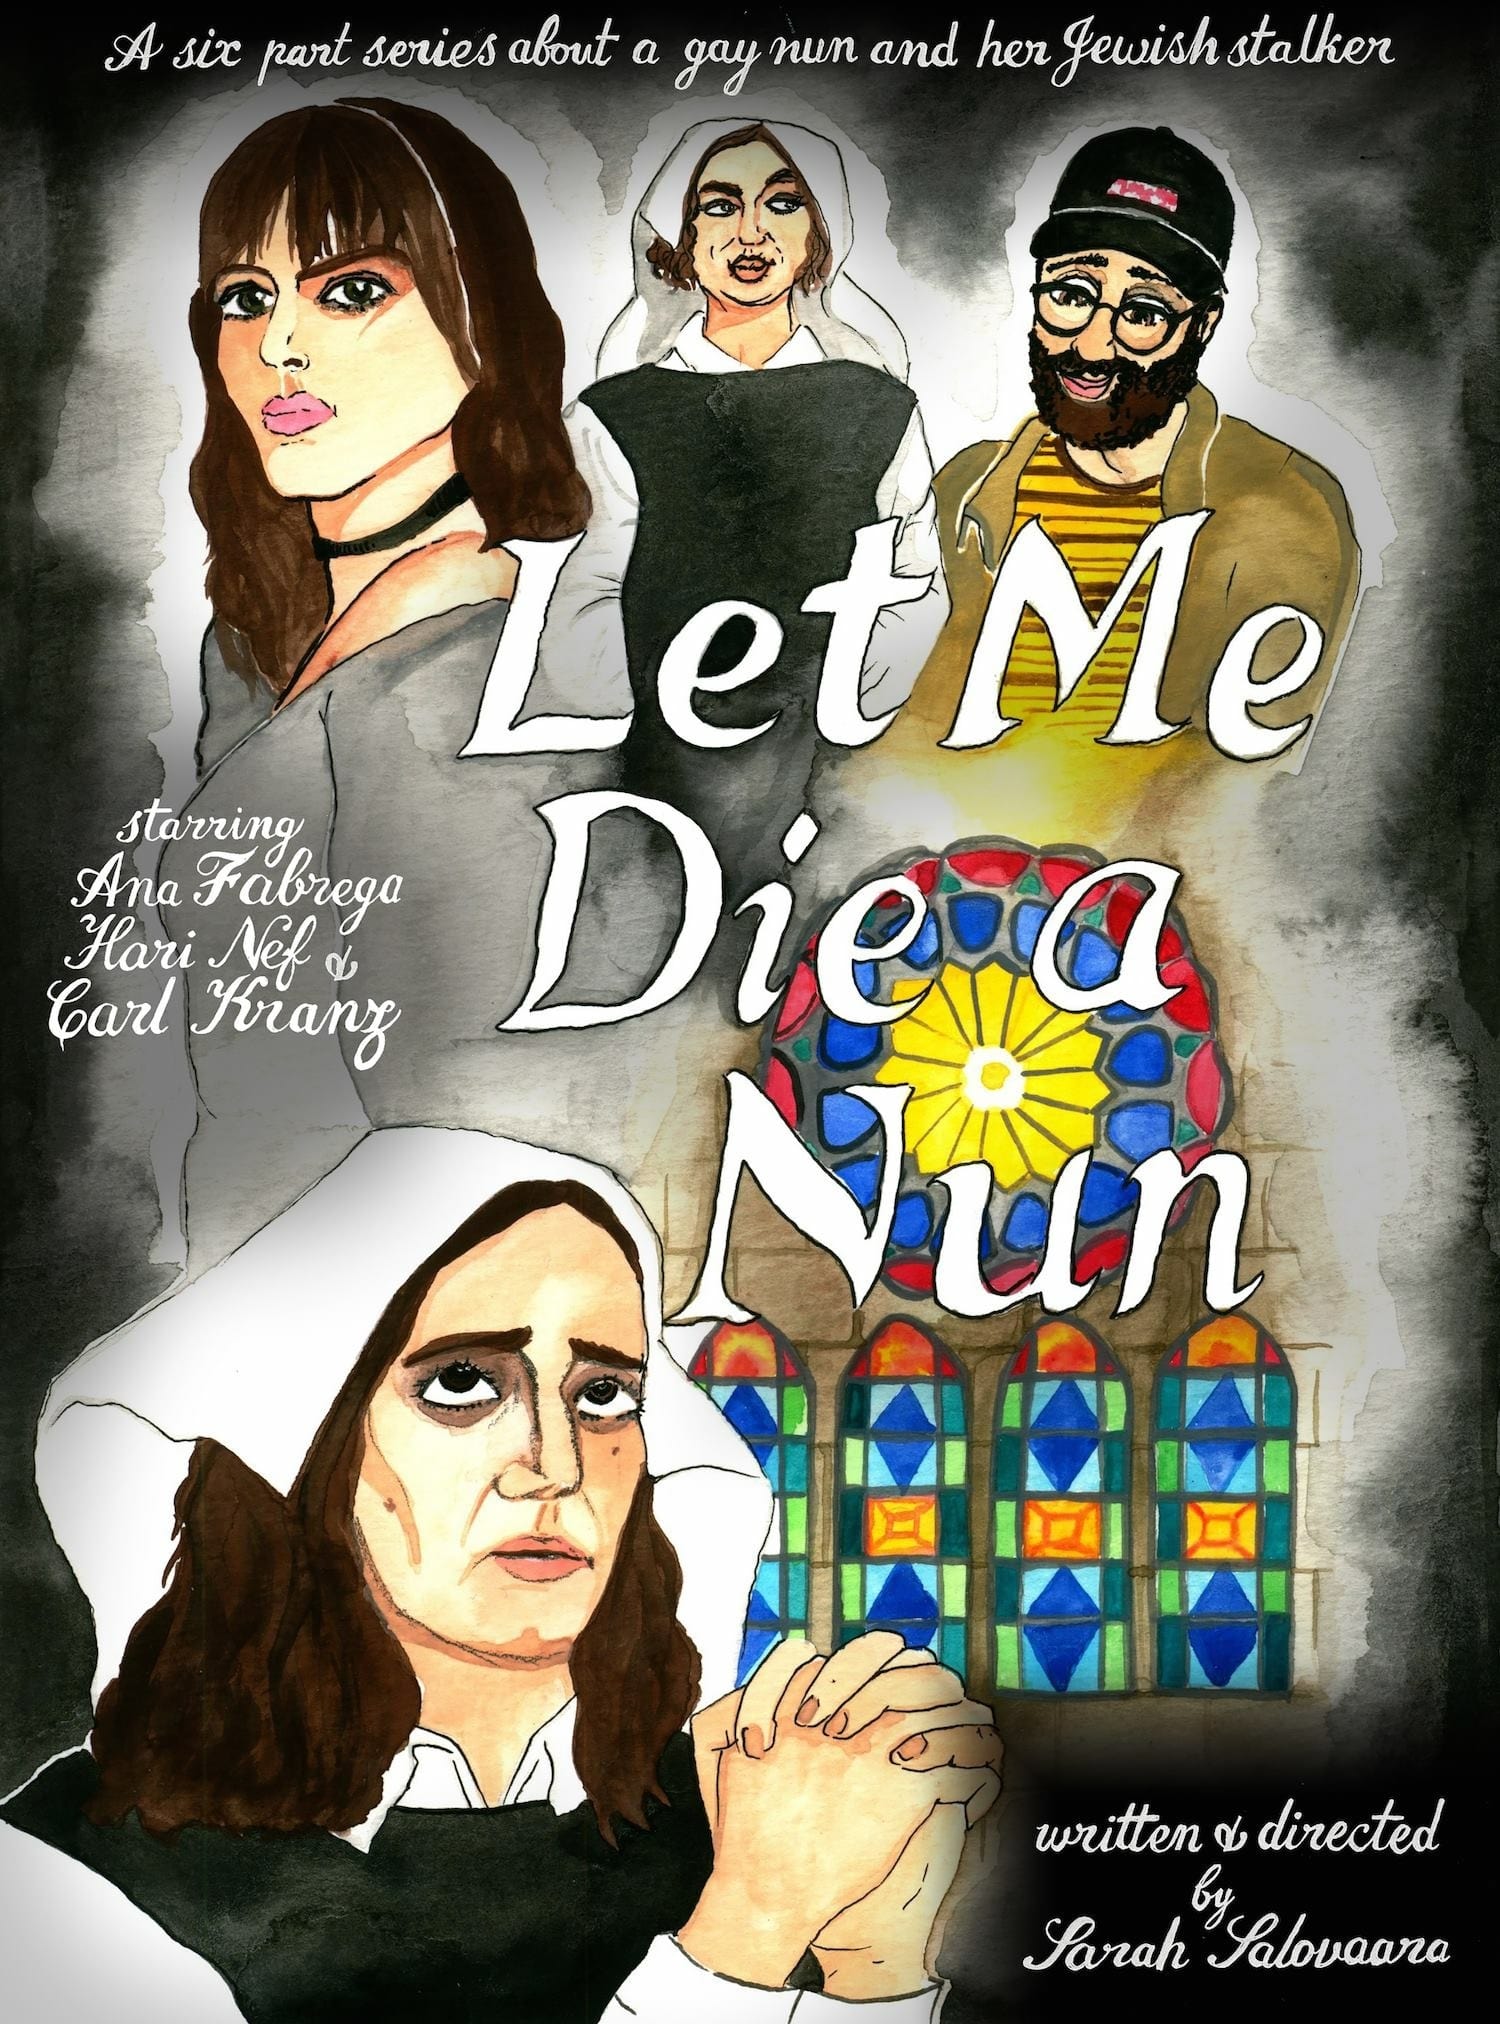 Let Me Die a Nun